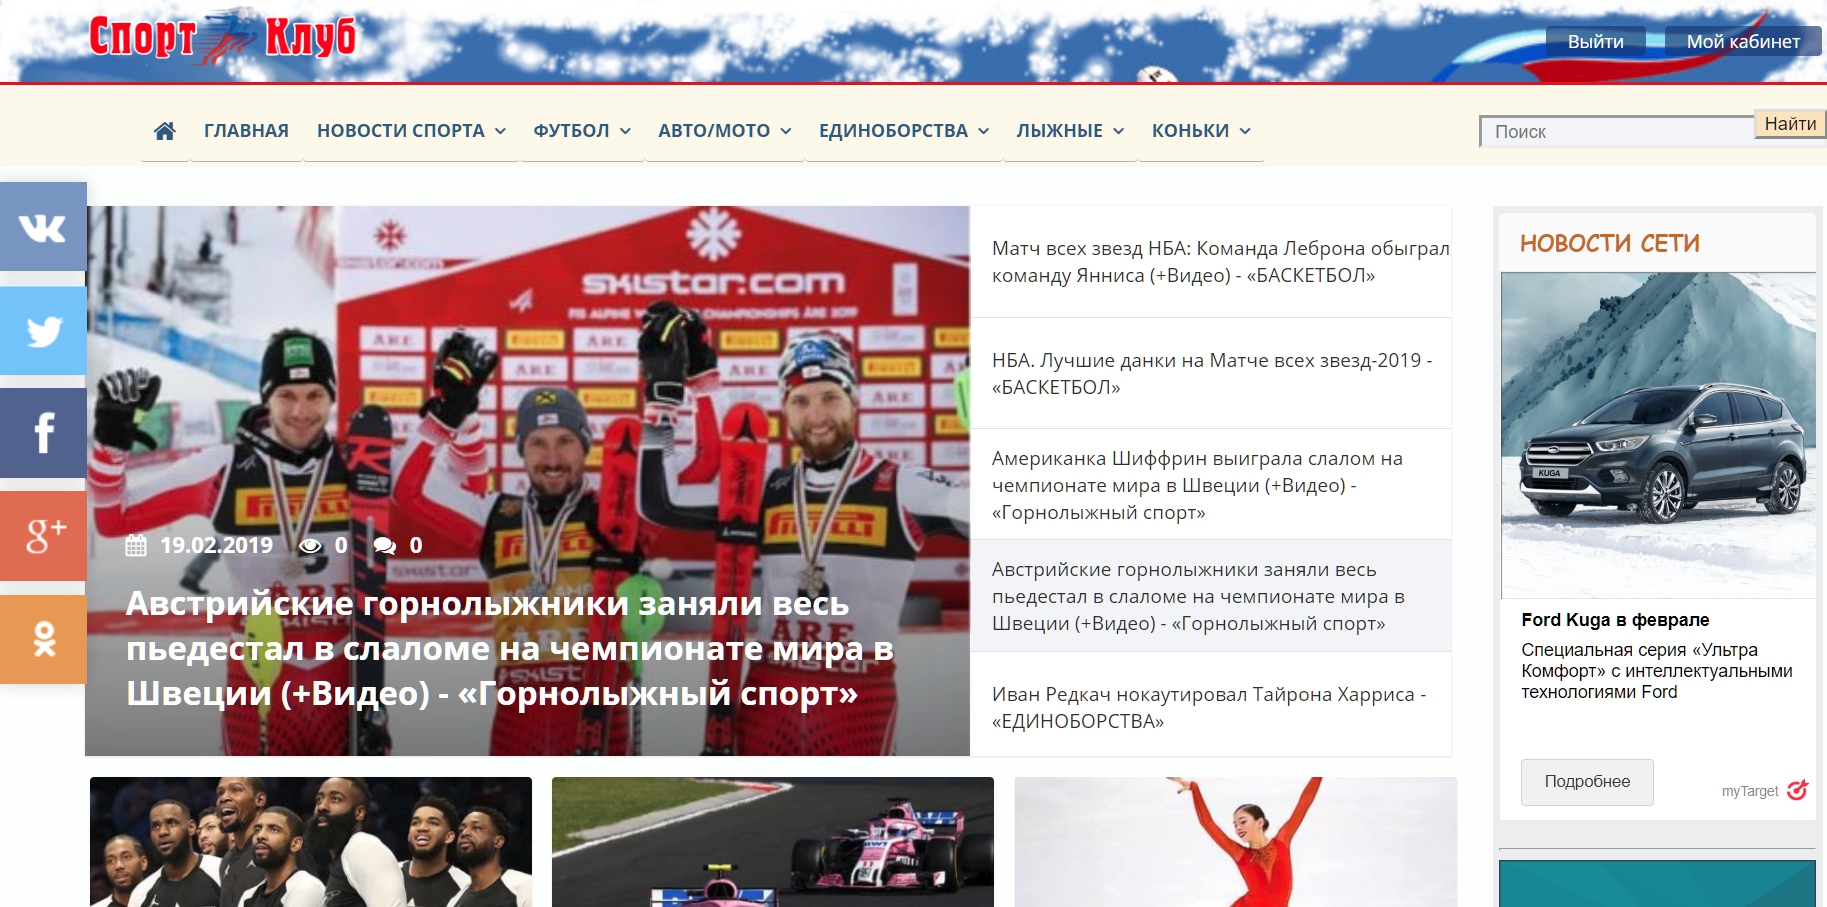 nv-sportclub.ru - ������ ����